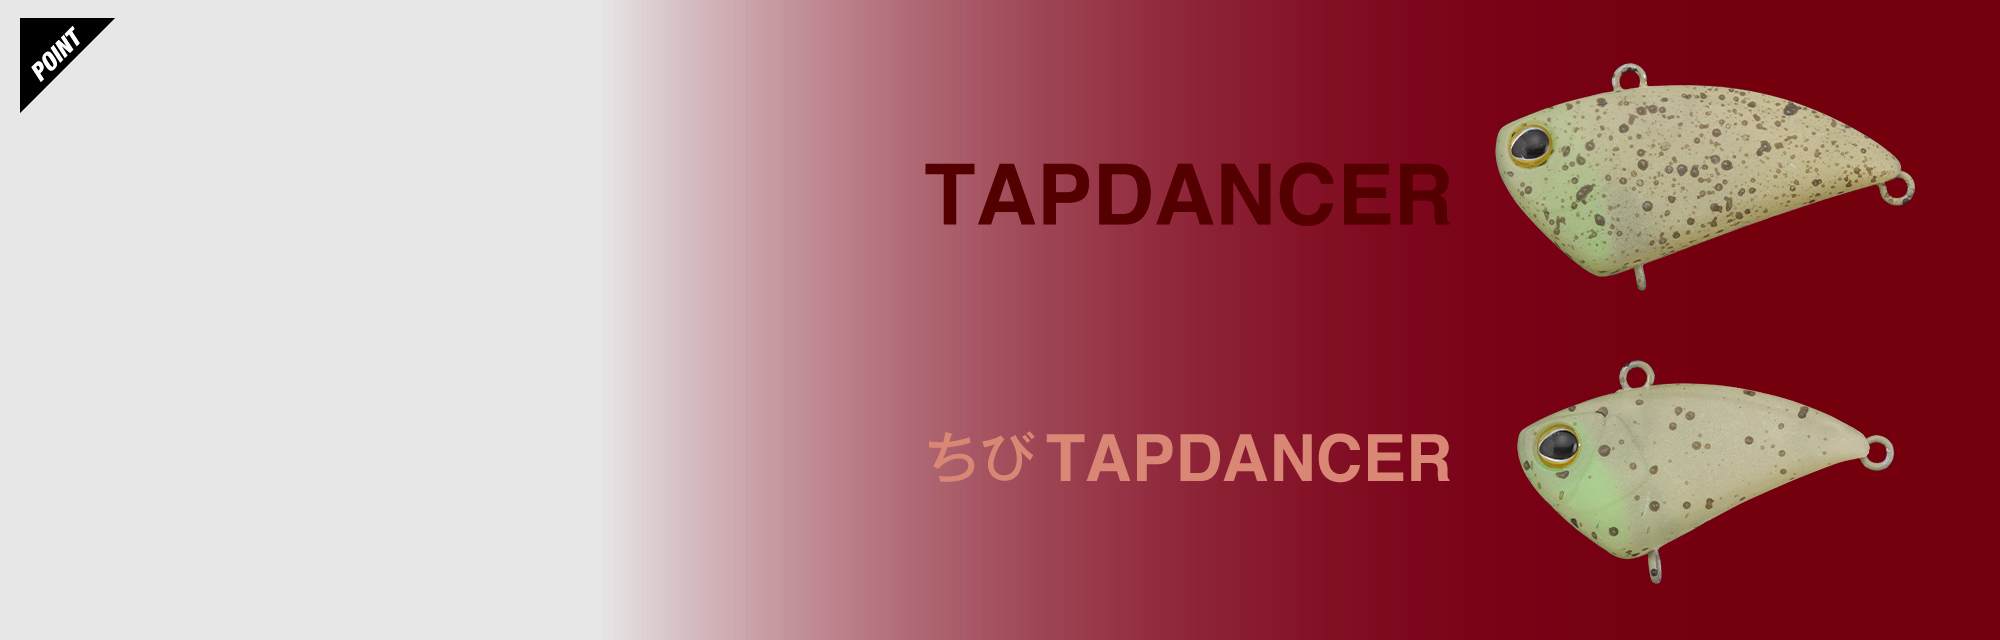 TAP DANCER TAP DANCER